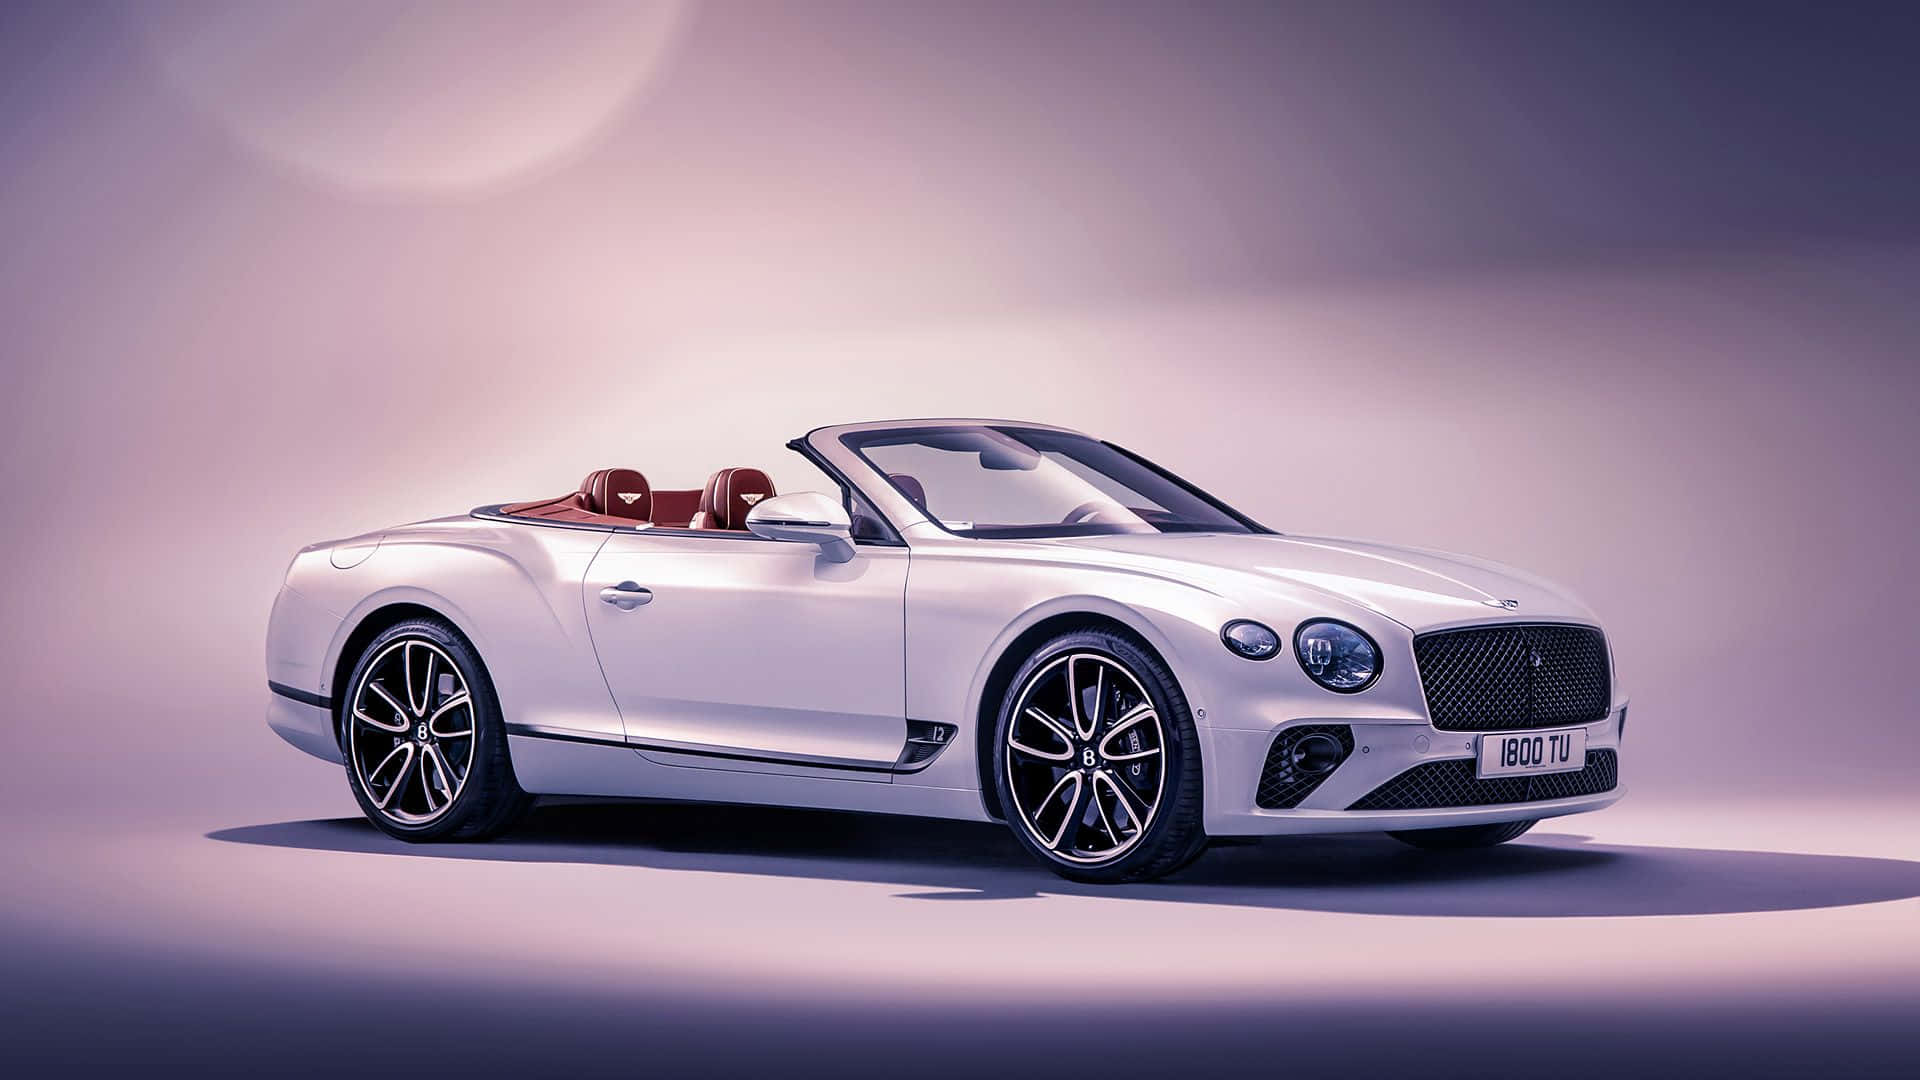 Ilmeglio Da Bentley: Le Auto Di Lusso Più Desiderate